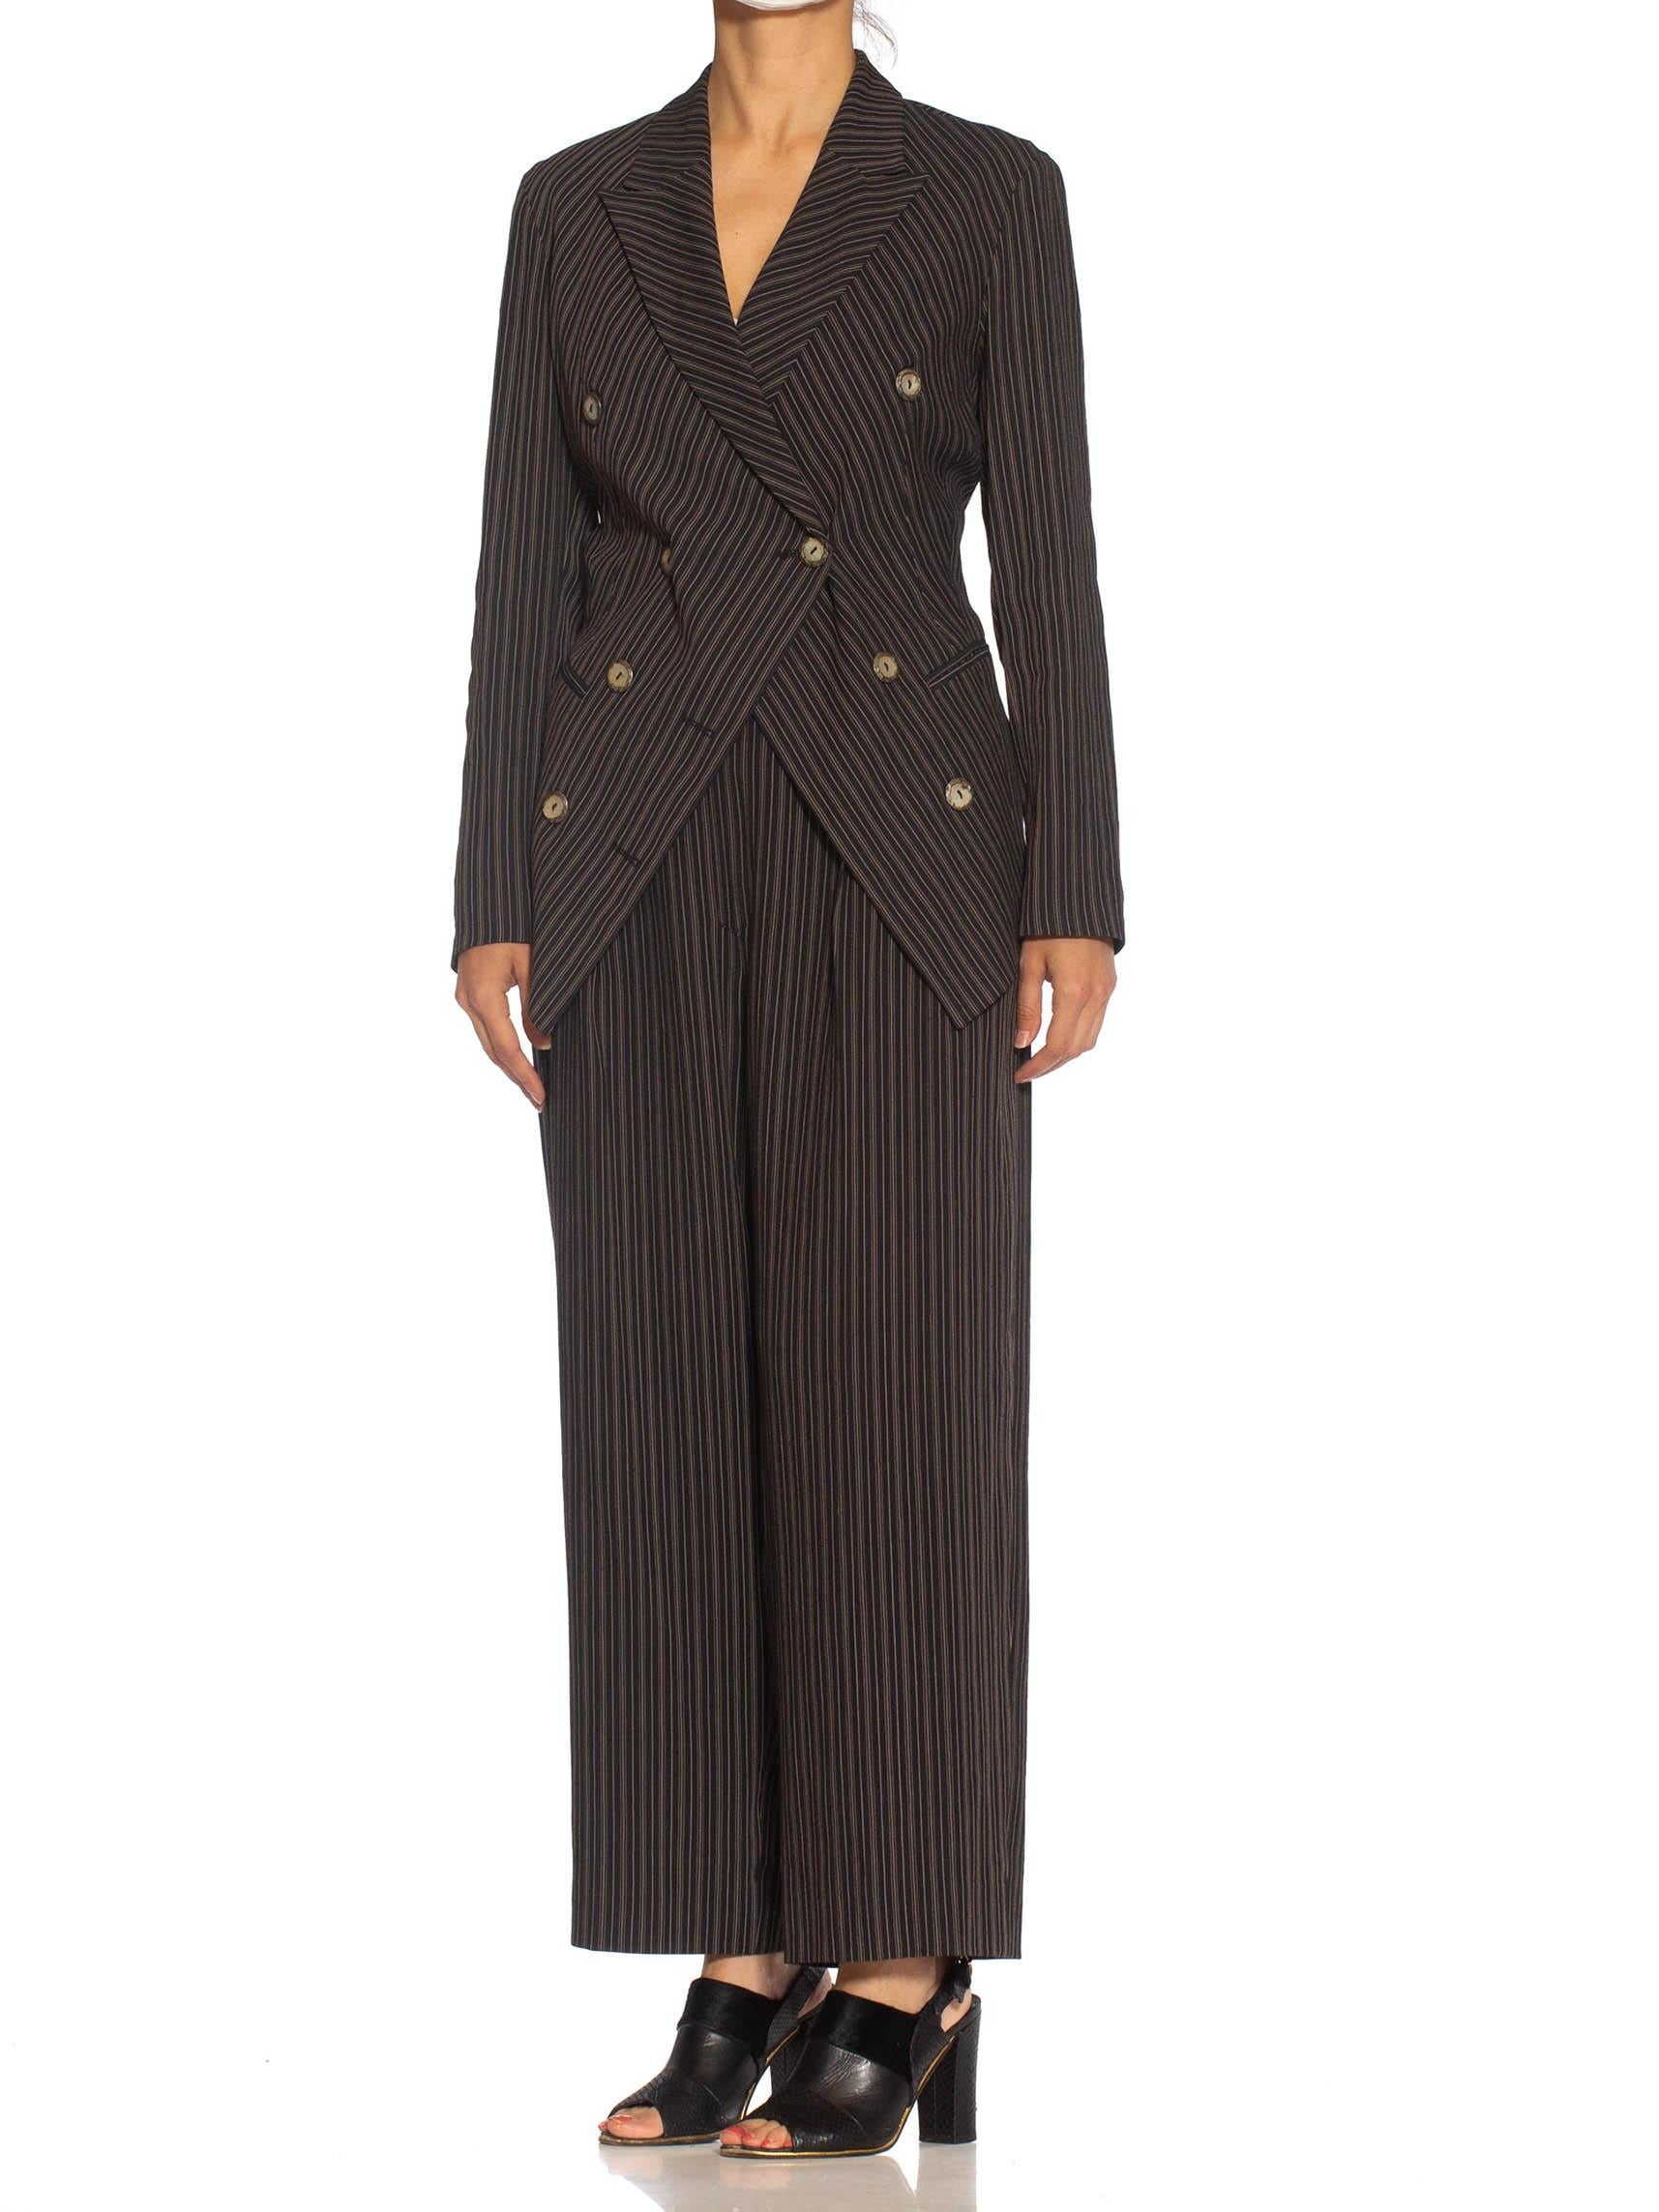 1990S RIFAT OZBEK Black & Beige Linen Blend Pinstripe Pant Suit 1